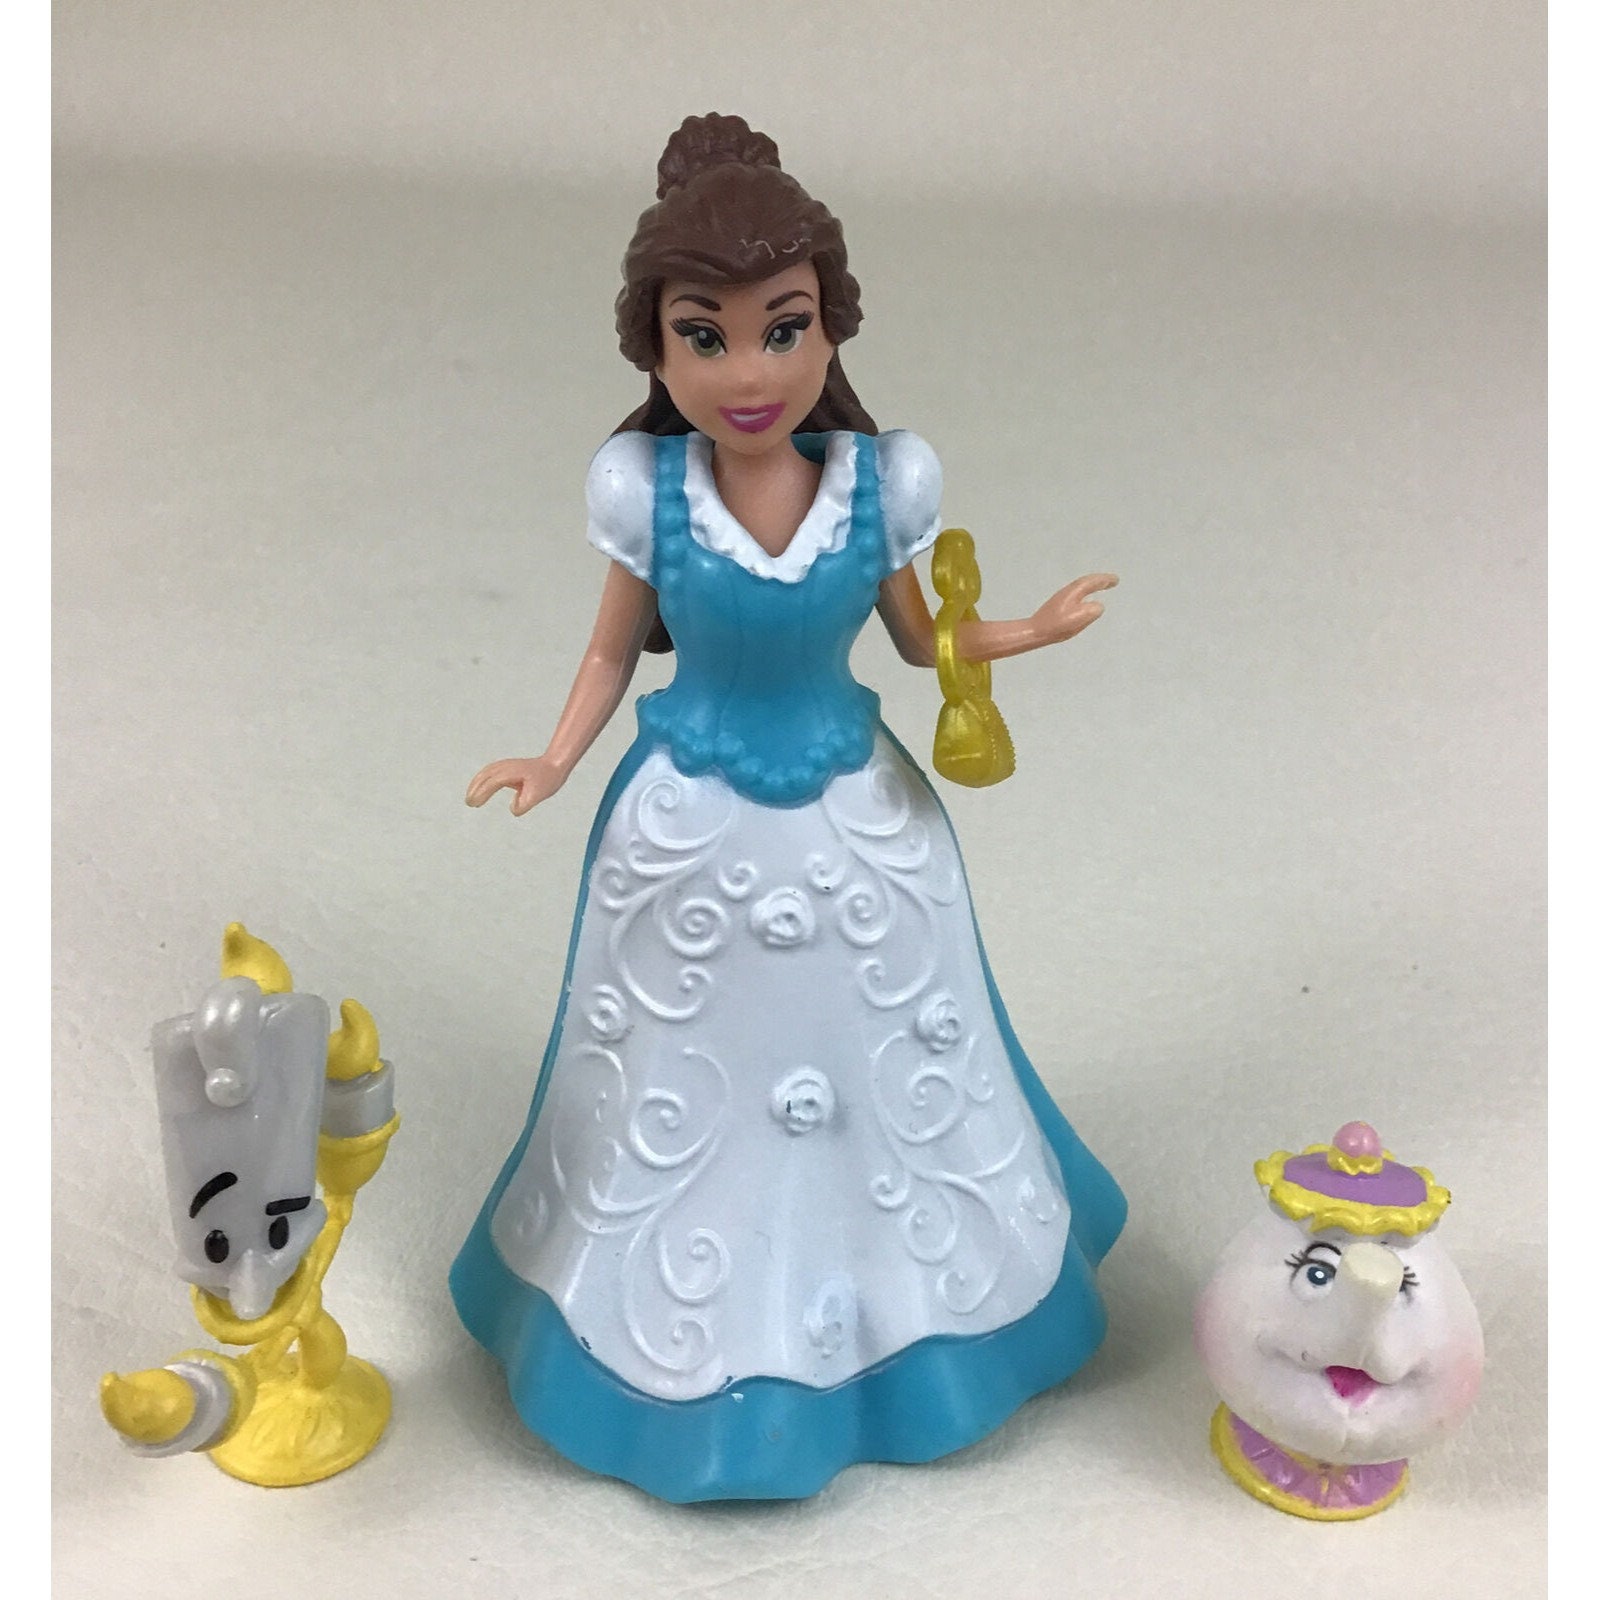 Disney Princess - Poupée de luxe Bébé Belle